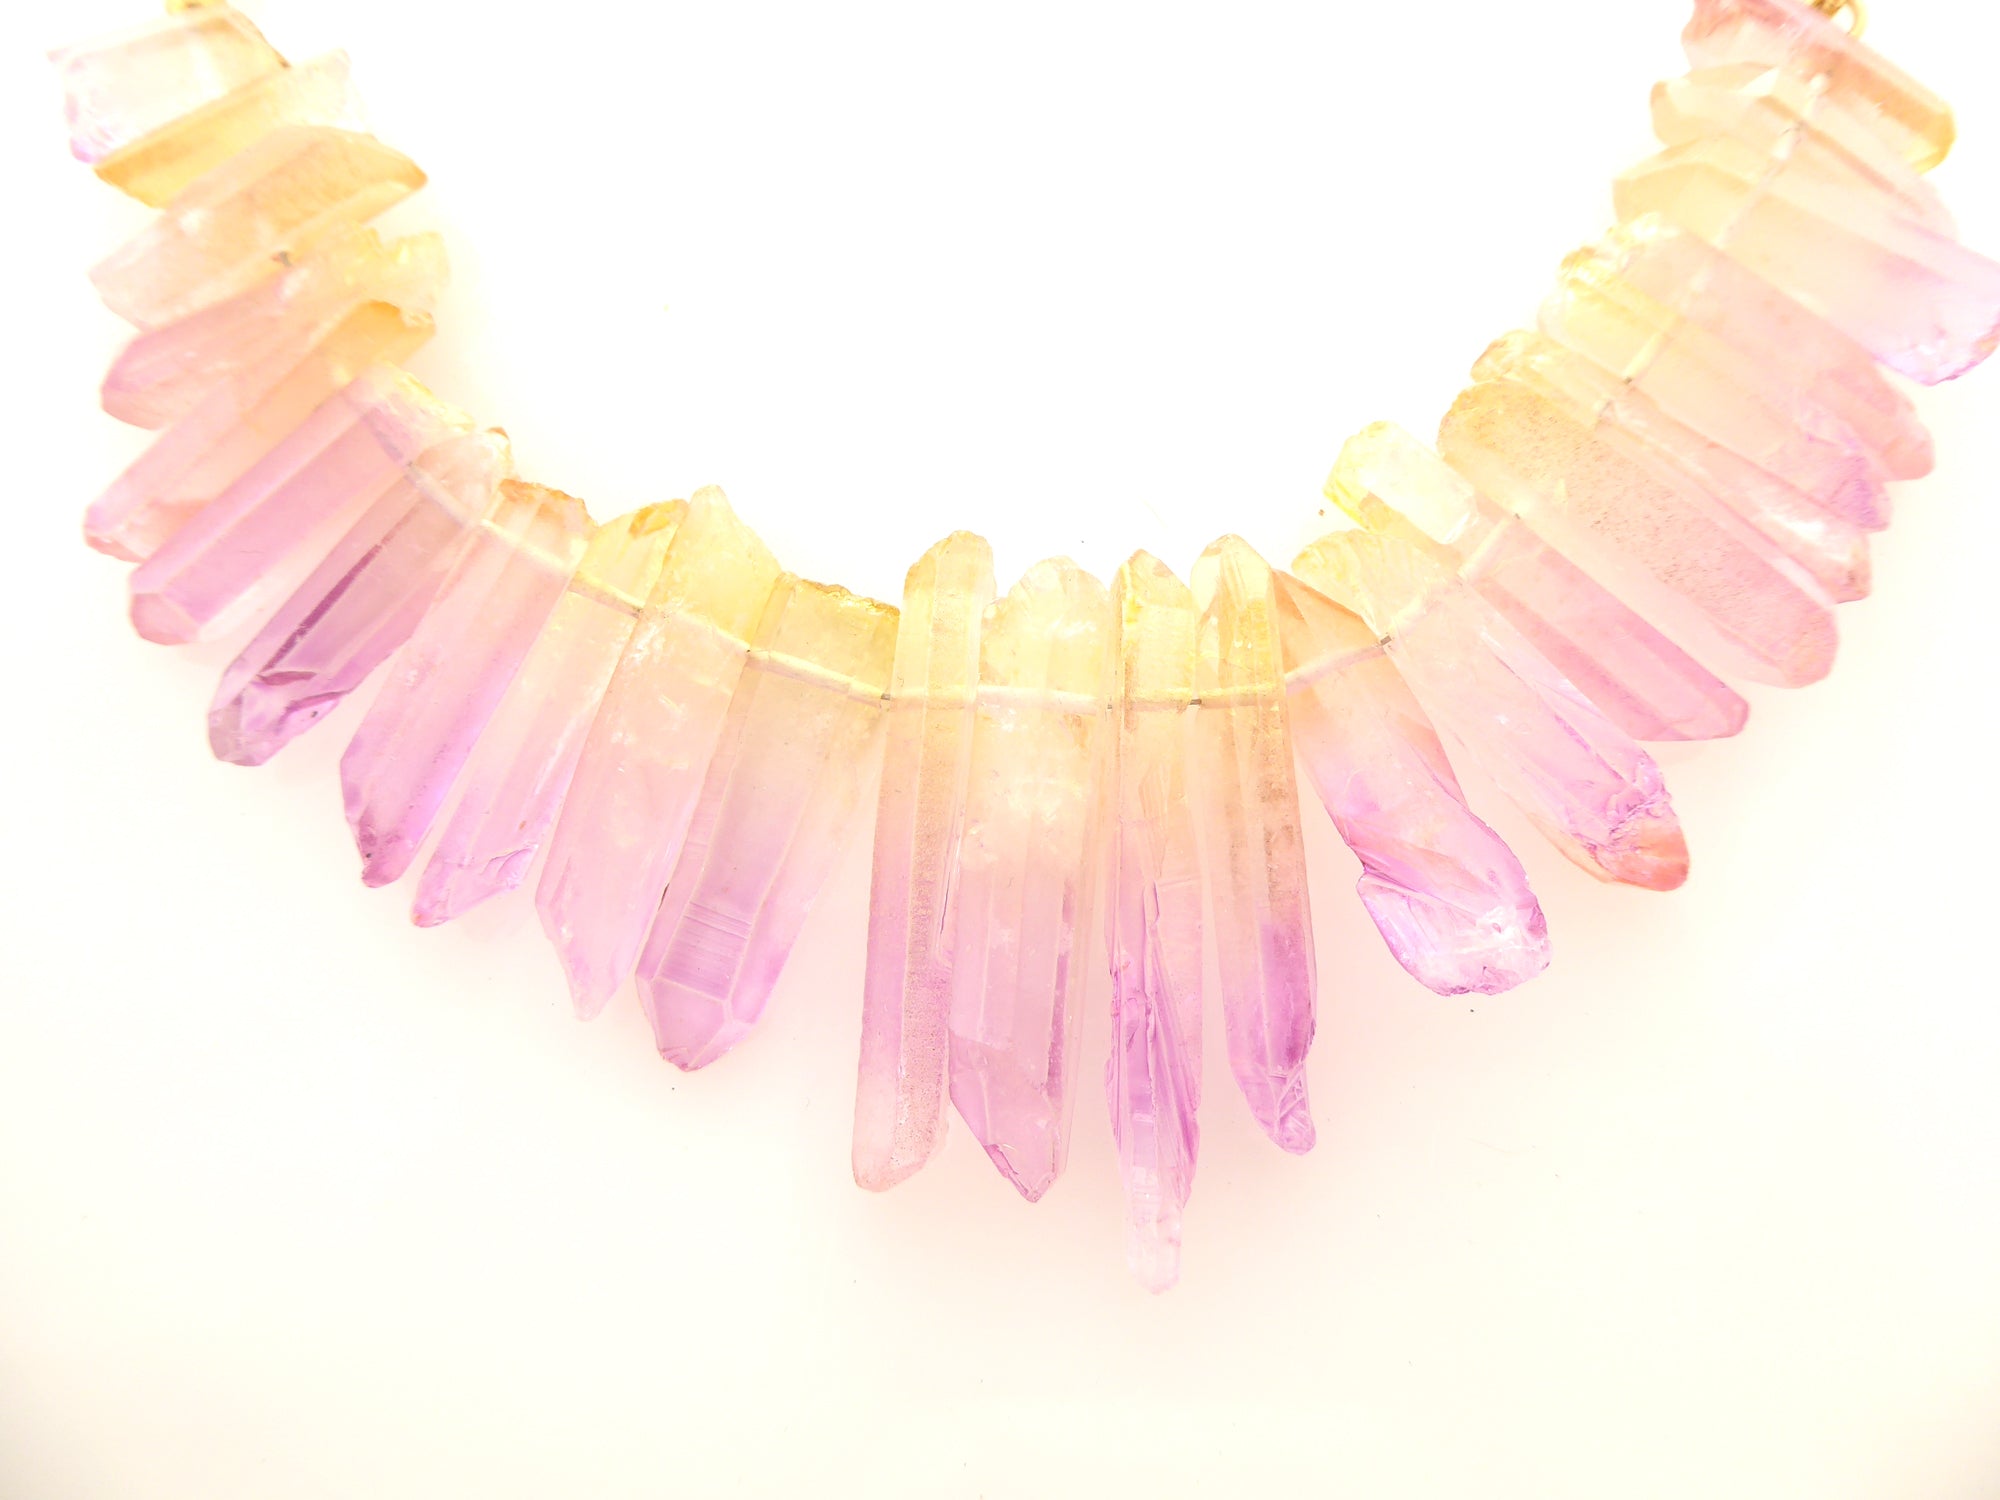 Pink lemonade quartz necklace